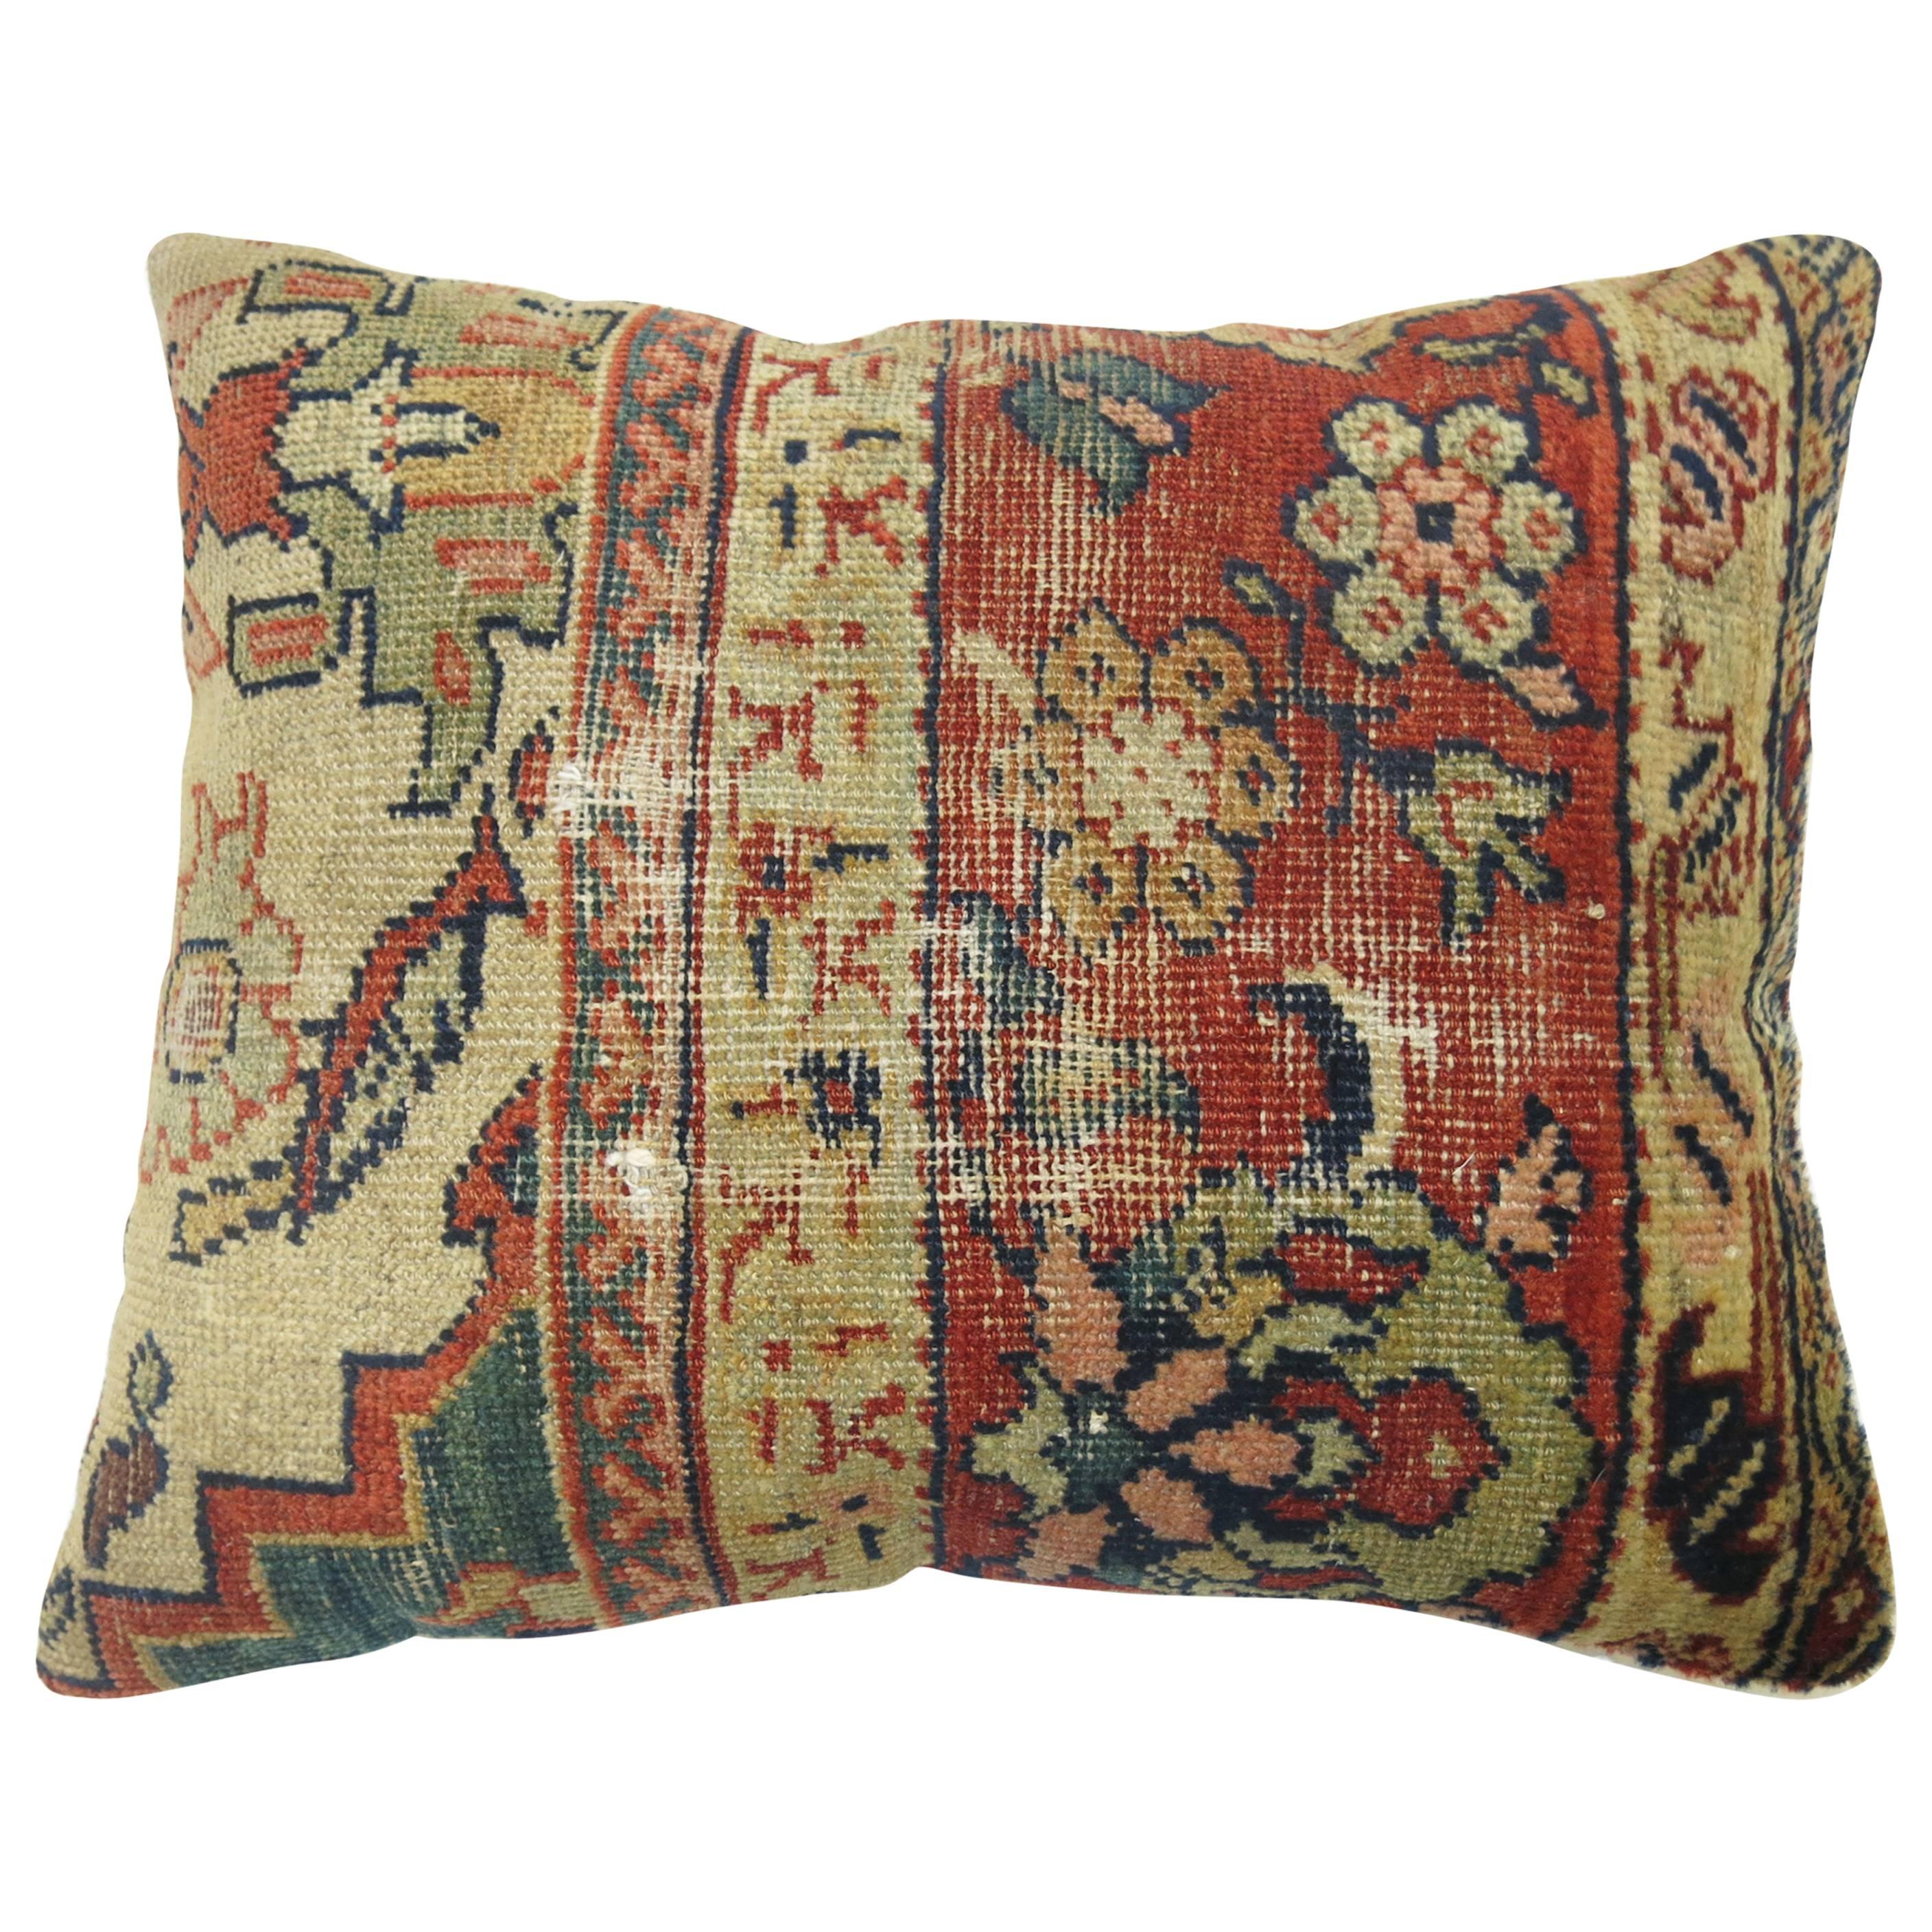 Worn Antique Persian Mahal Pillow